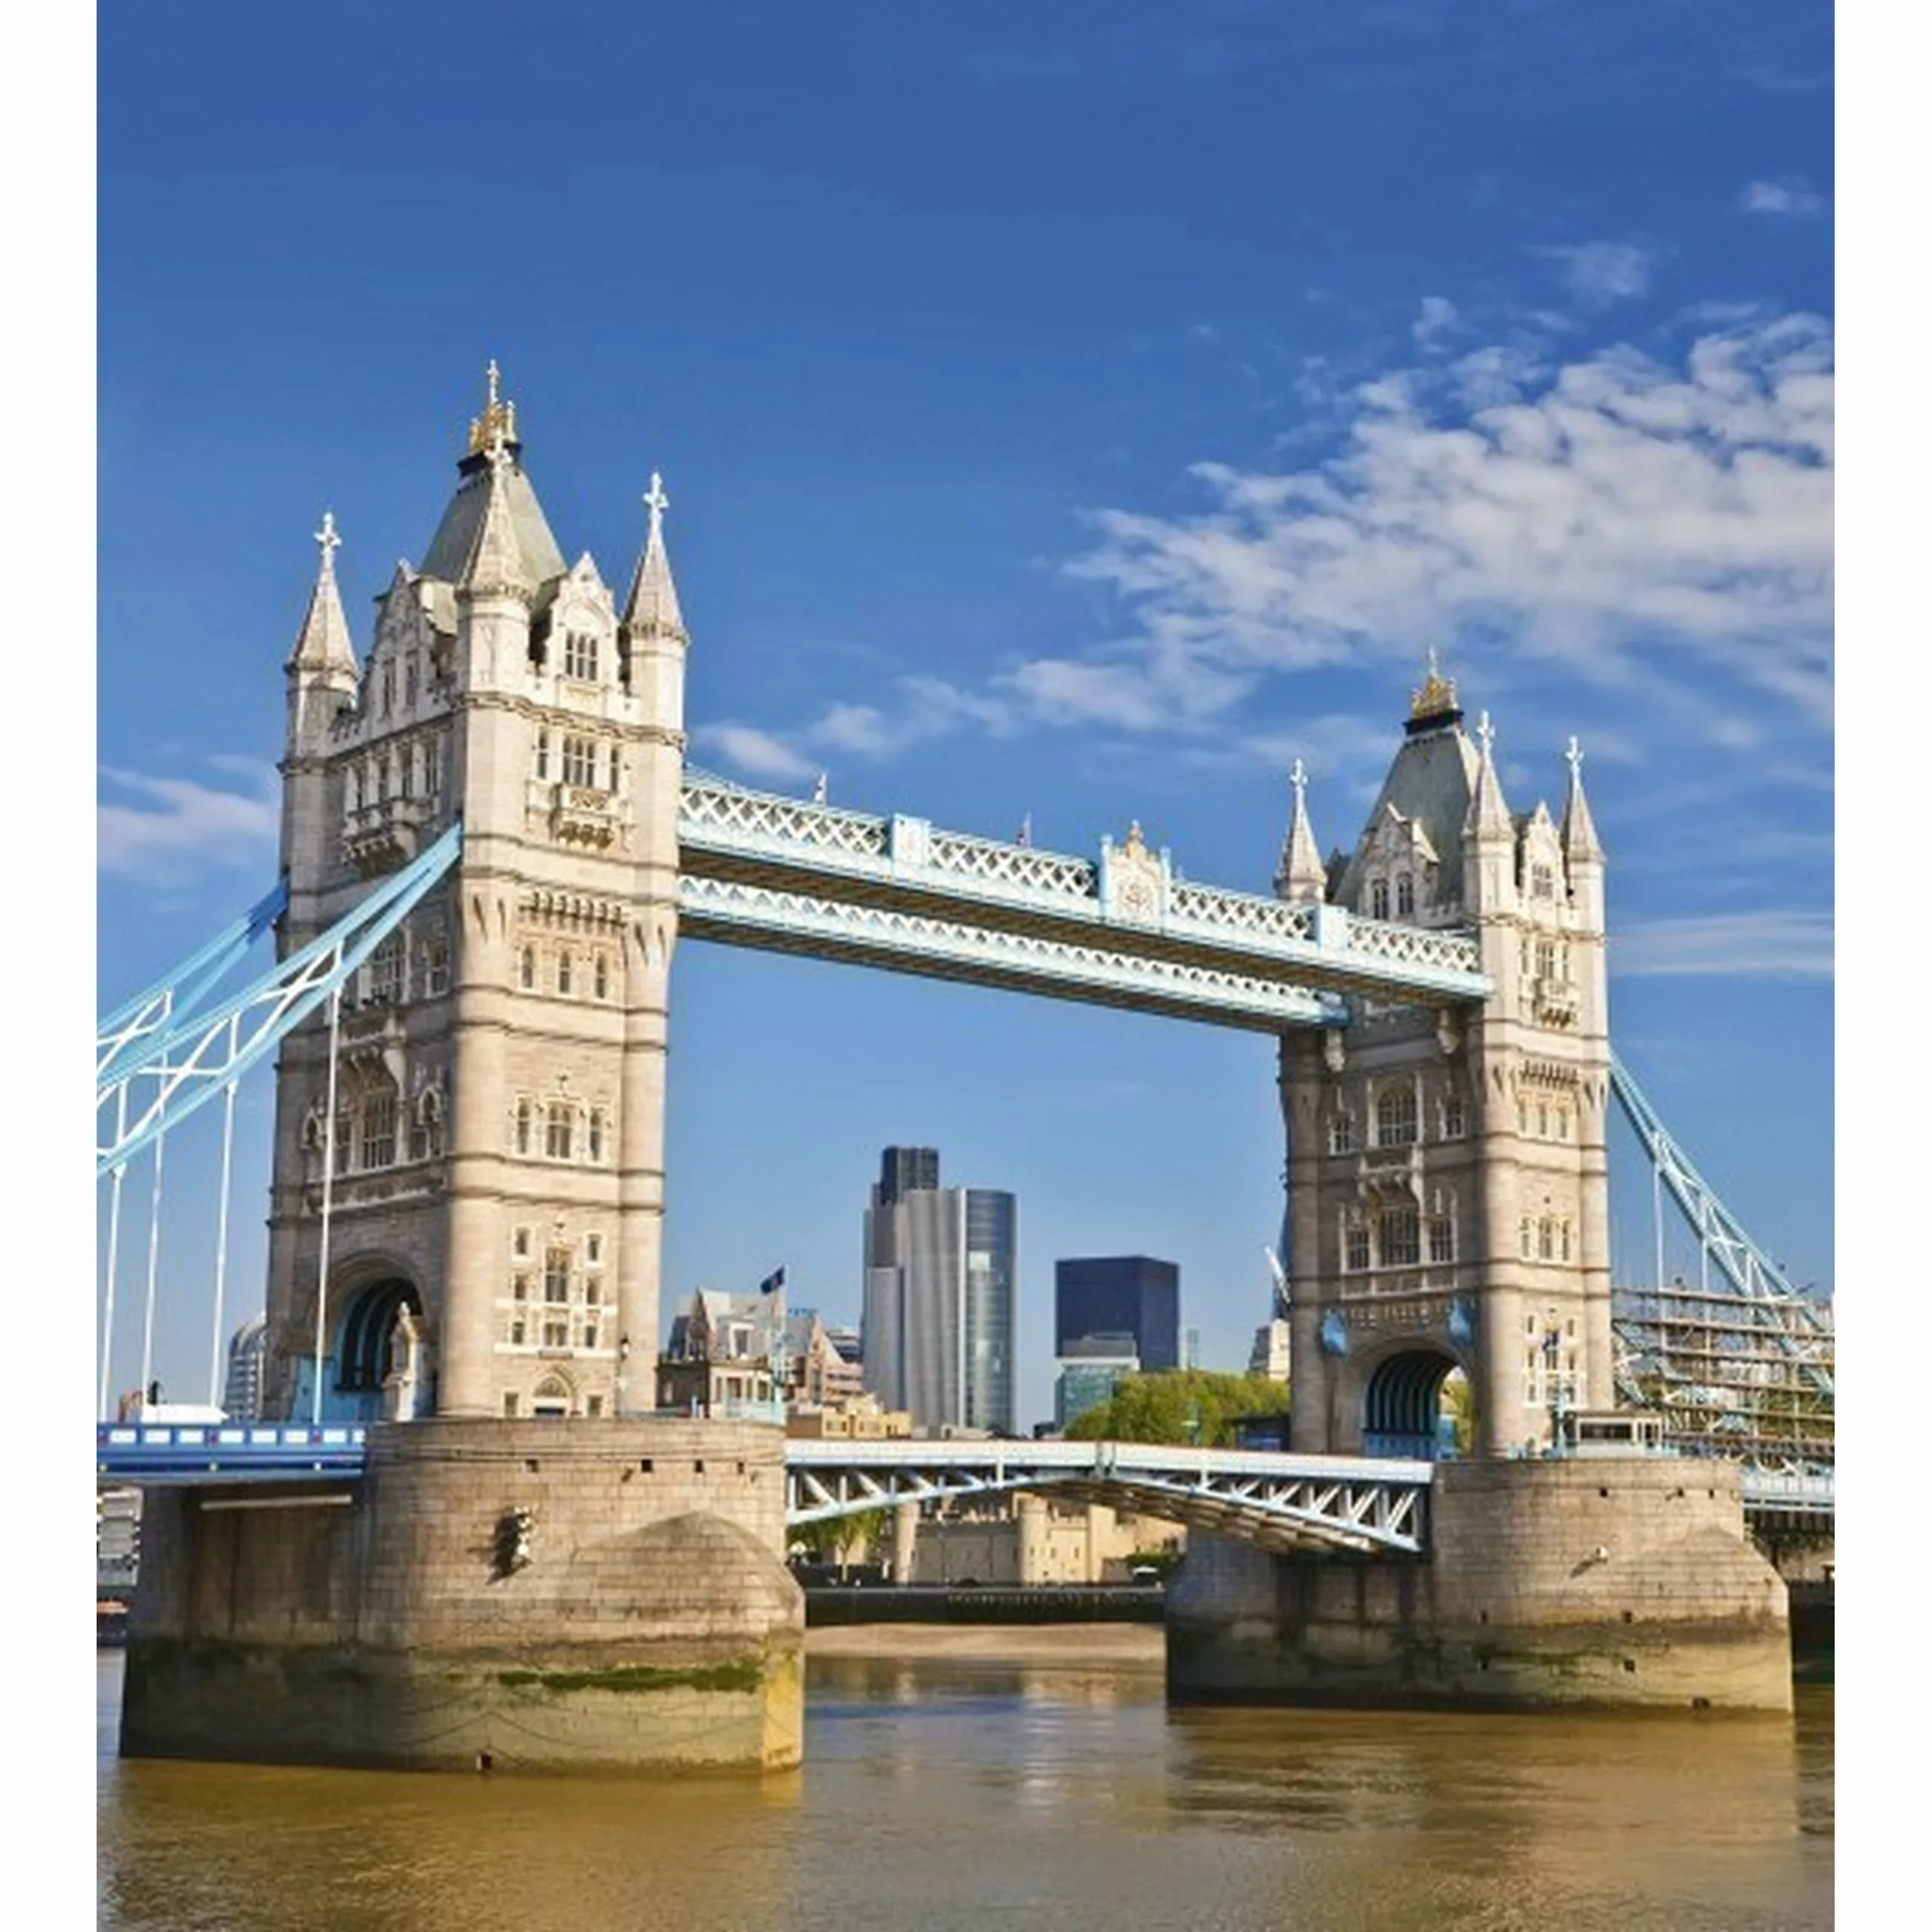 Fototapete TOWER BRIDGE  | MS-3-0019 | Blau | Digitaldruck auf Vliesträger günstig online kaufen